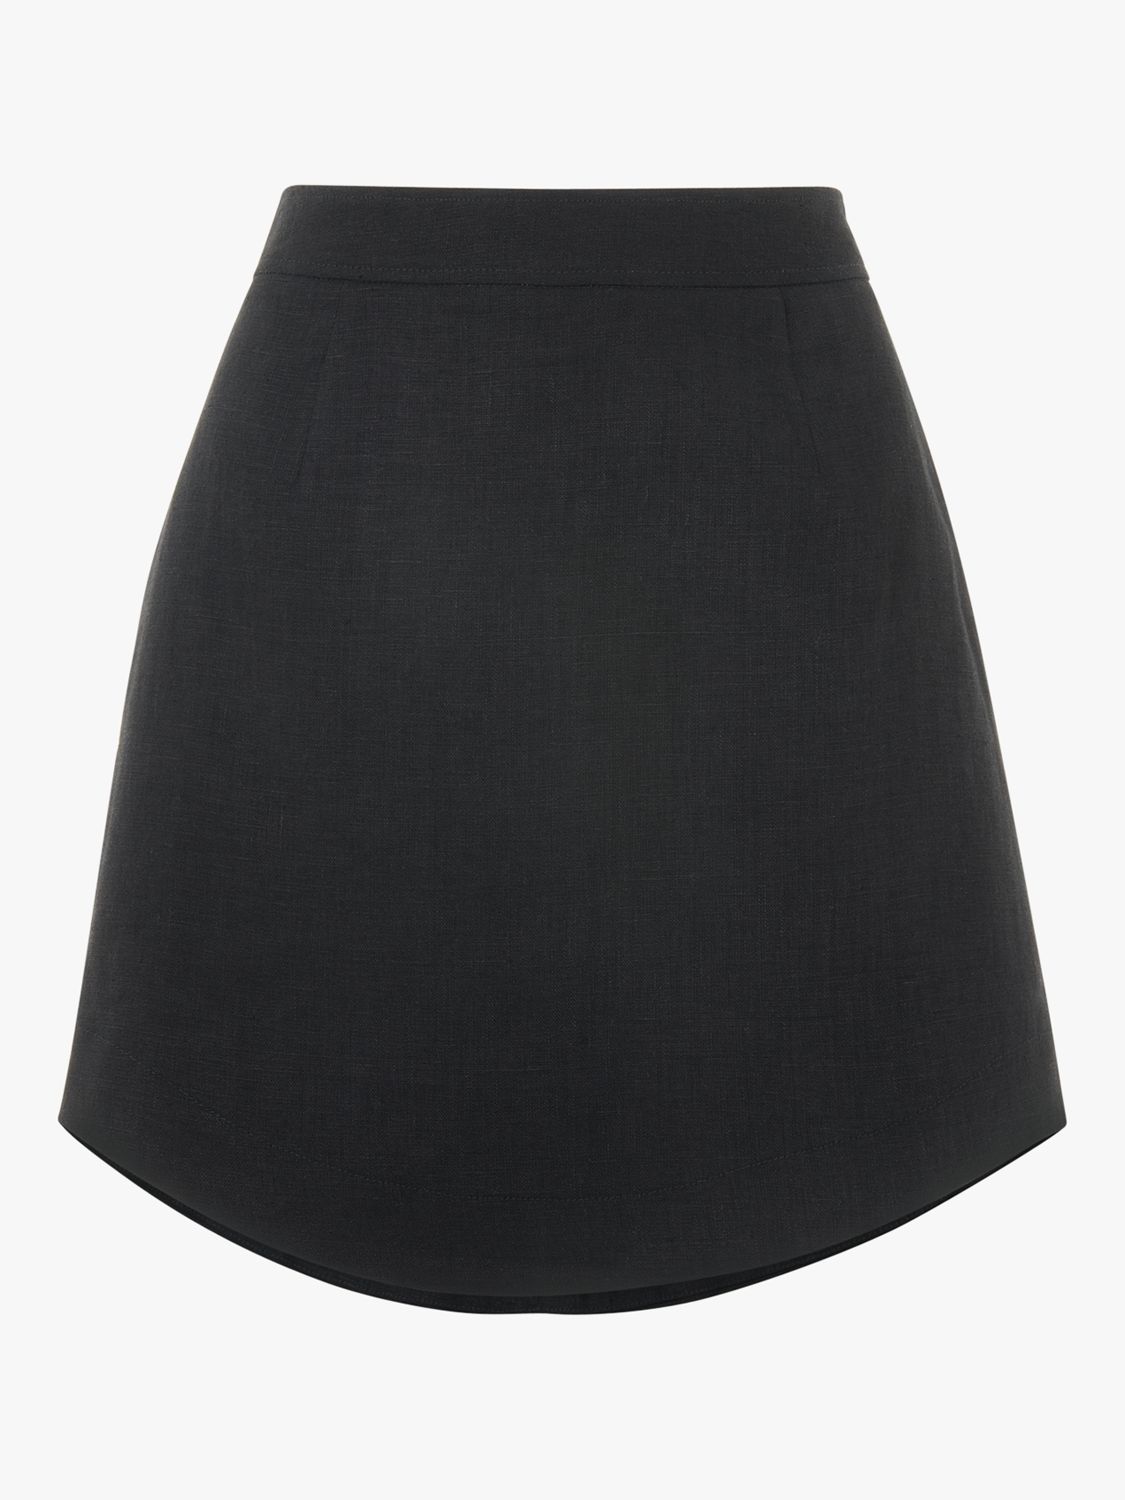 Black Wrap Detail Linen Skirt, WHISTLES